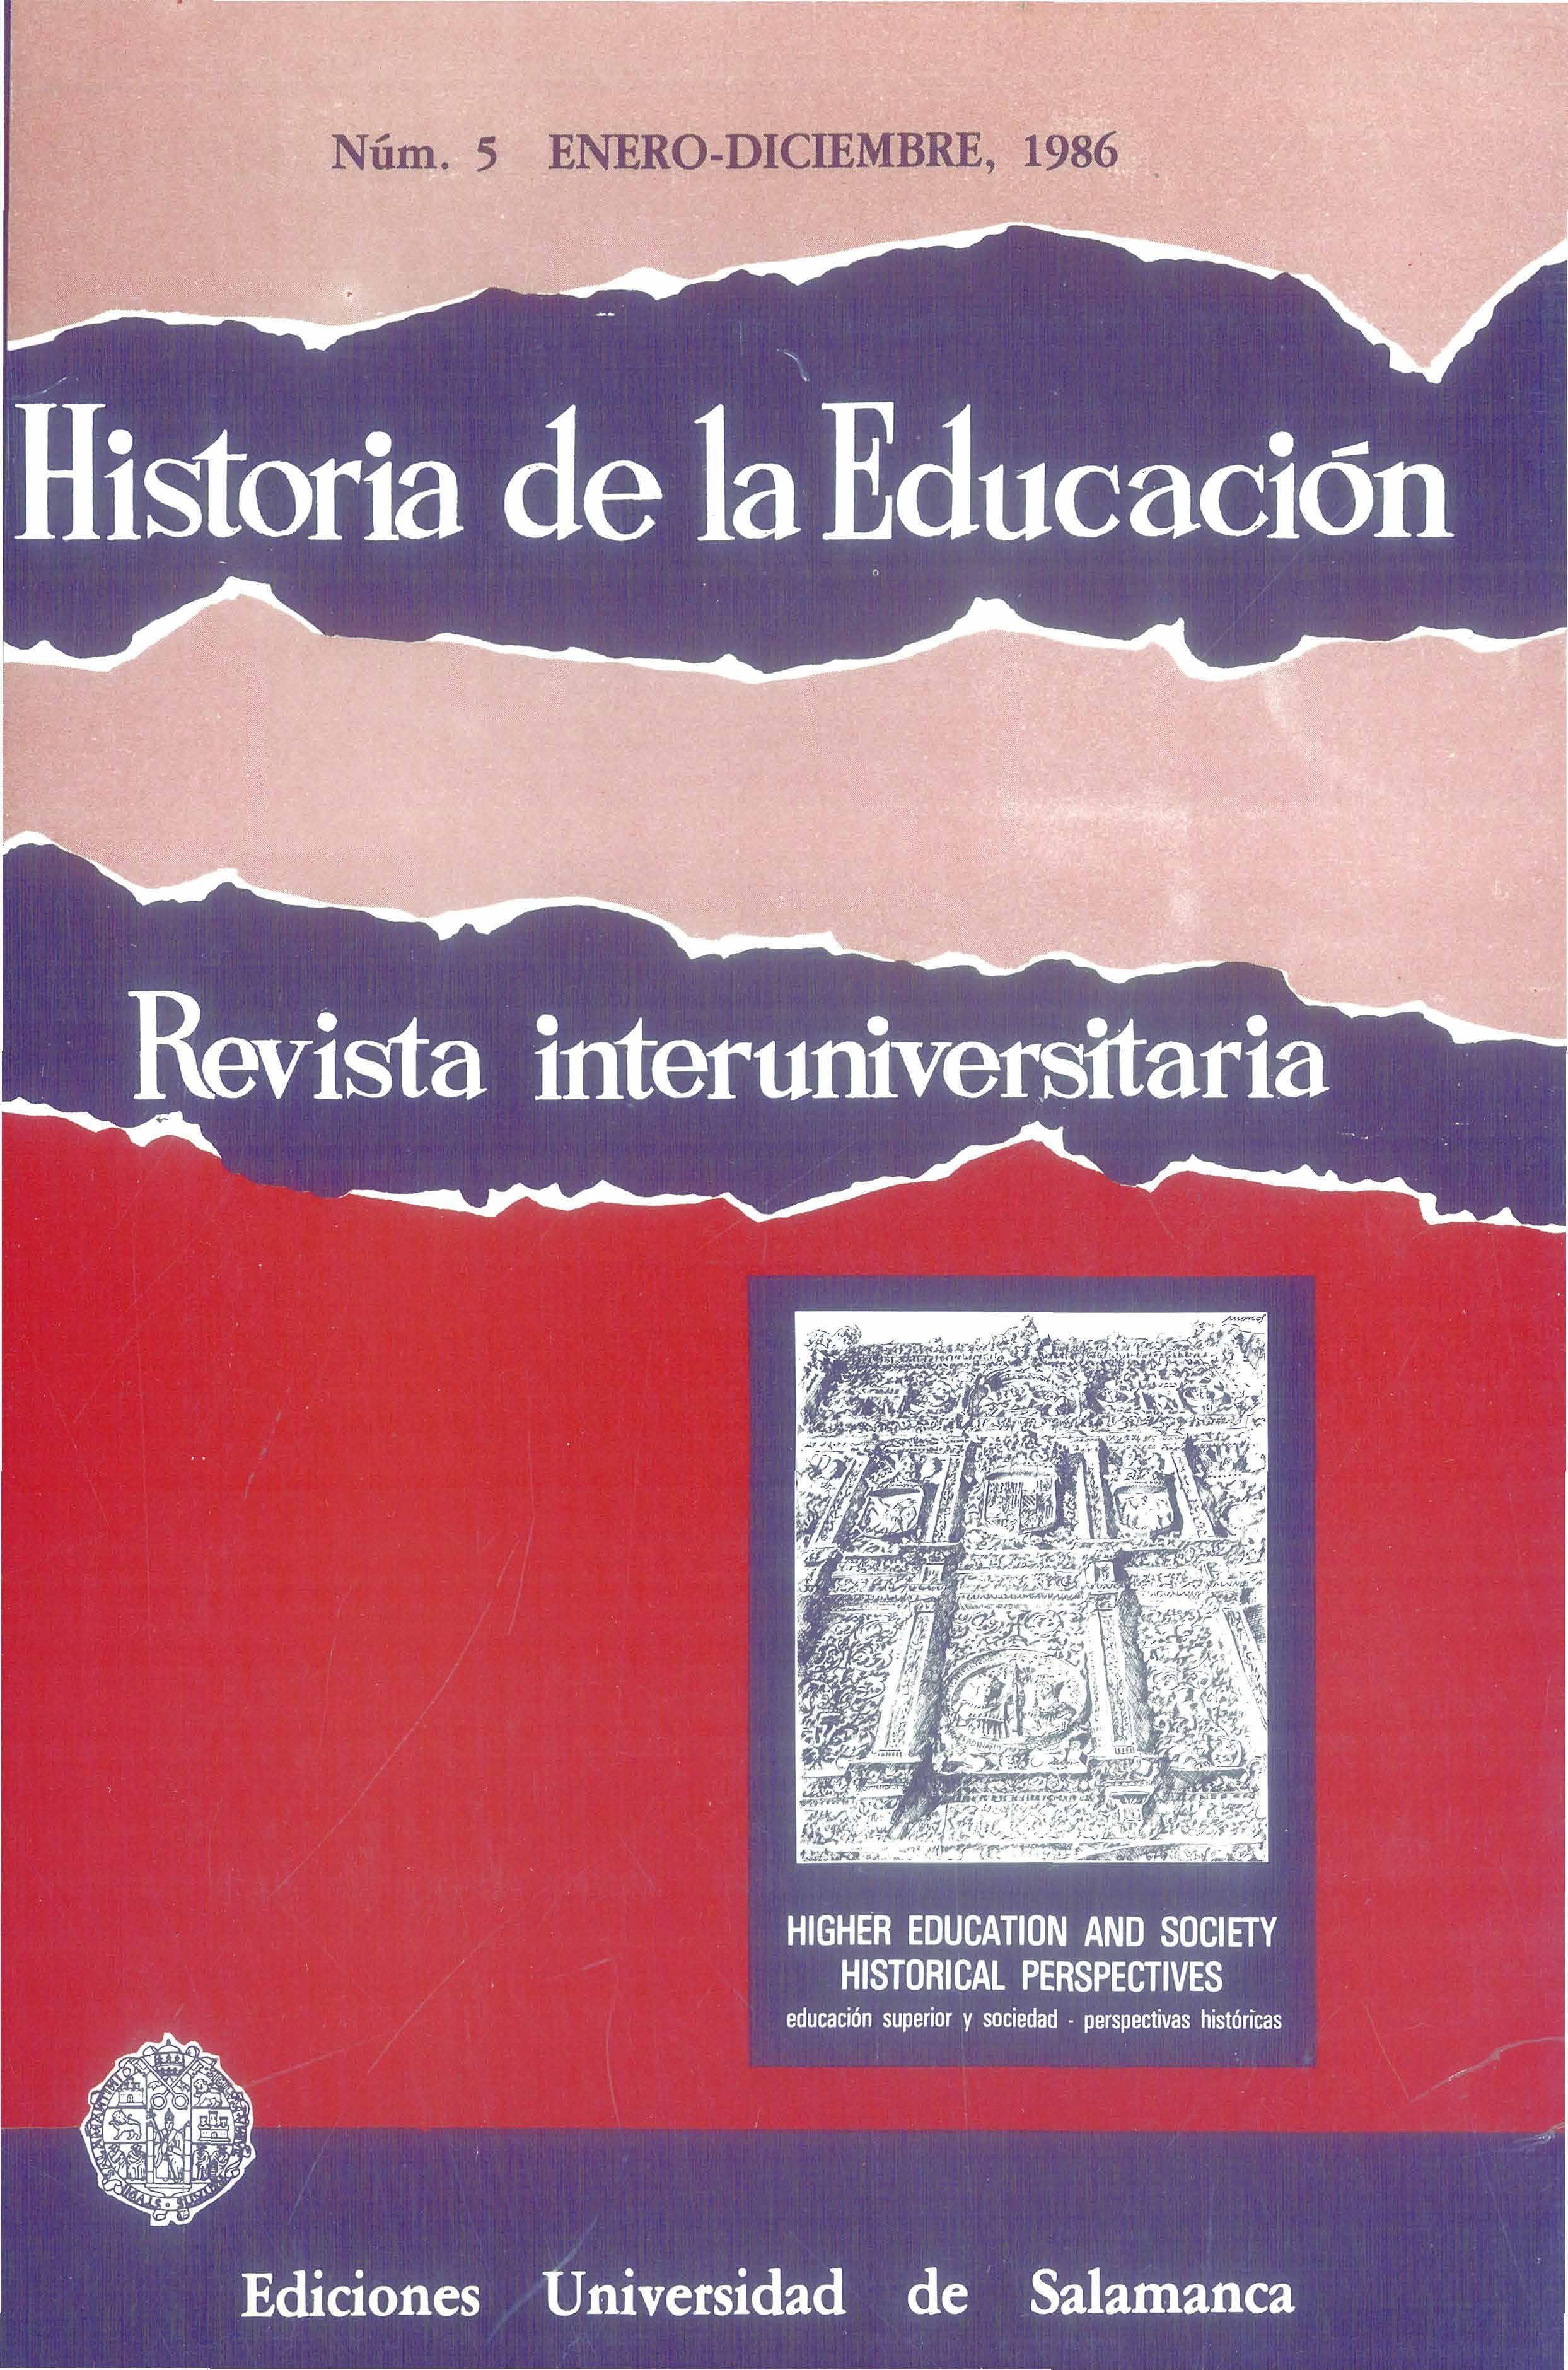                         Ver Vol. 5 (1986): Educación superior y sociedad. Perspectivas históricas
                    